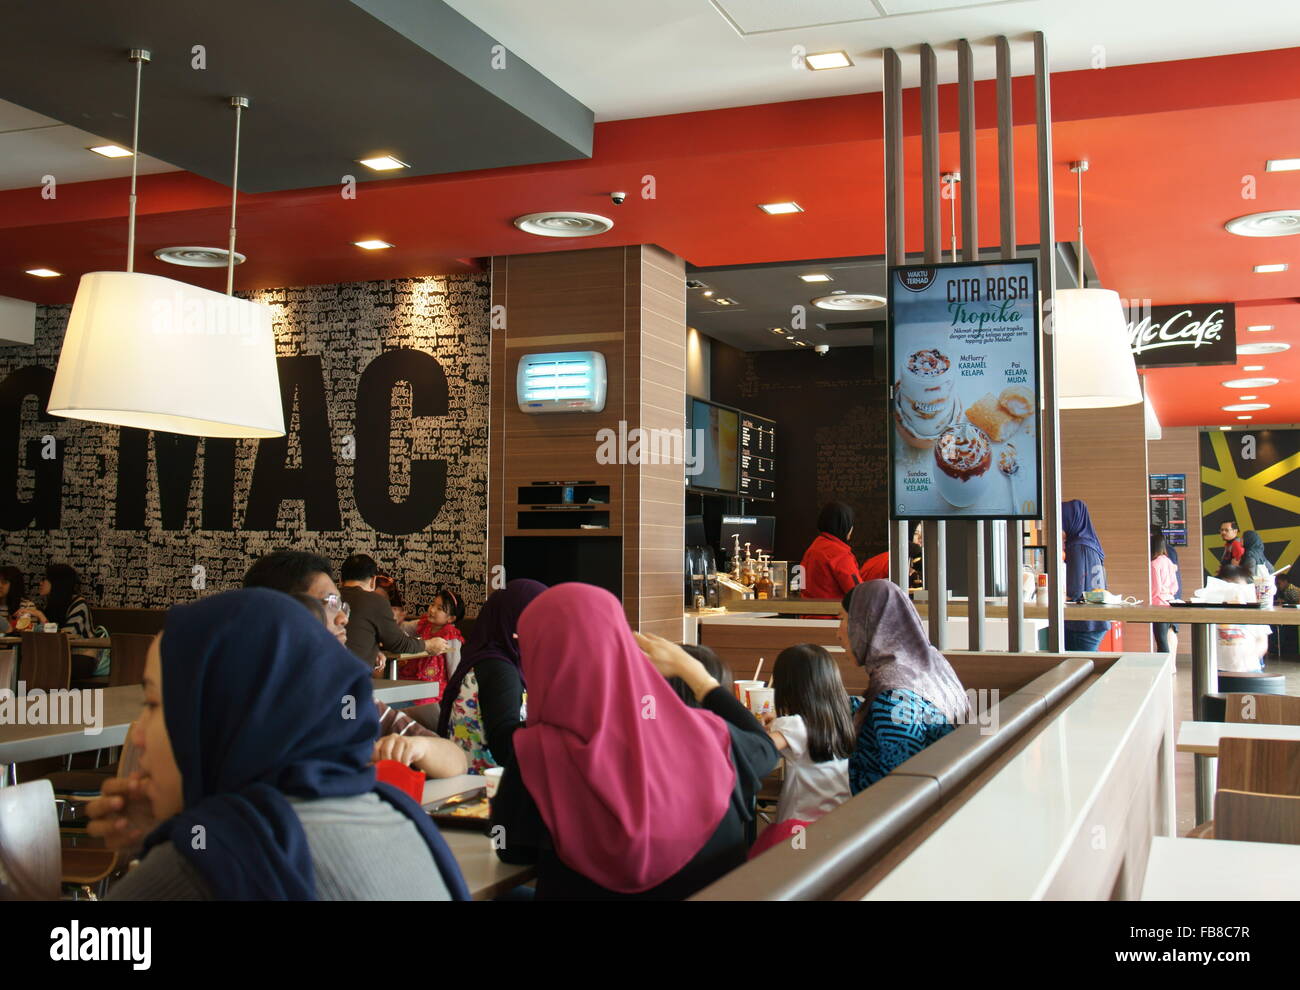 Café en Malaisie, appartenant à une chaîne de restauration rapide Mcdonald Banque D'Images